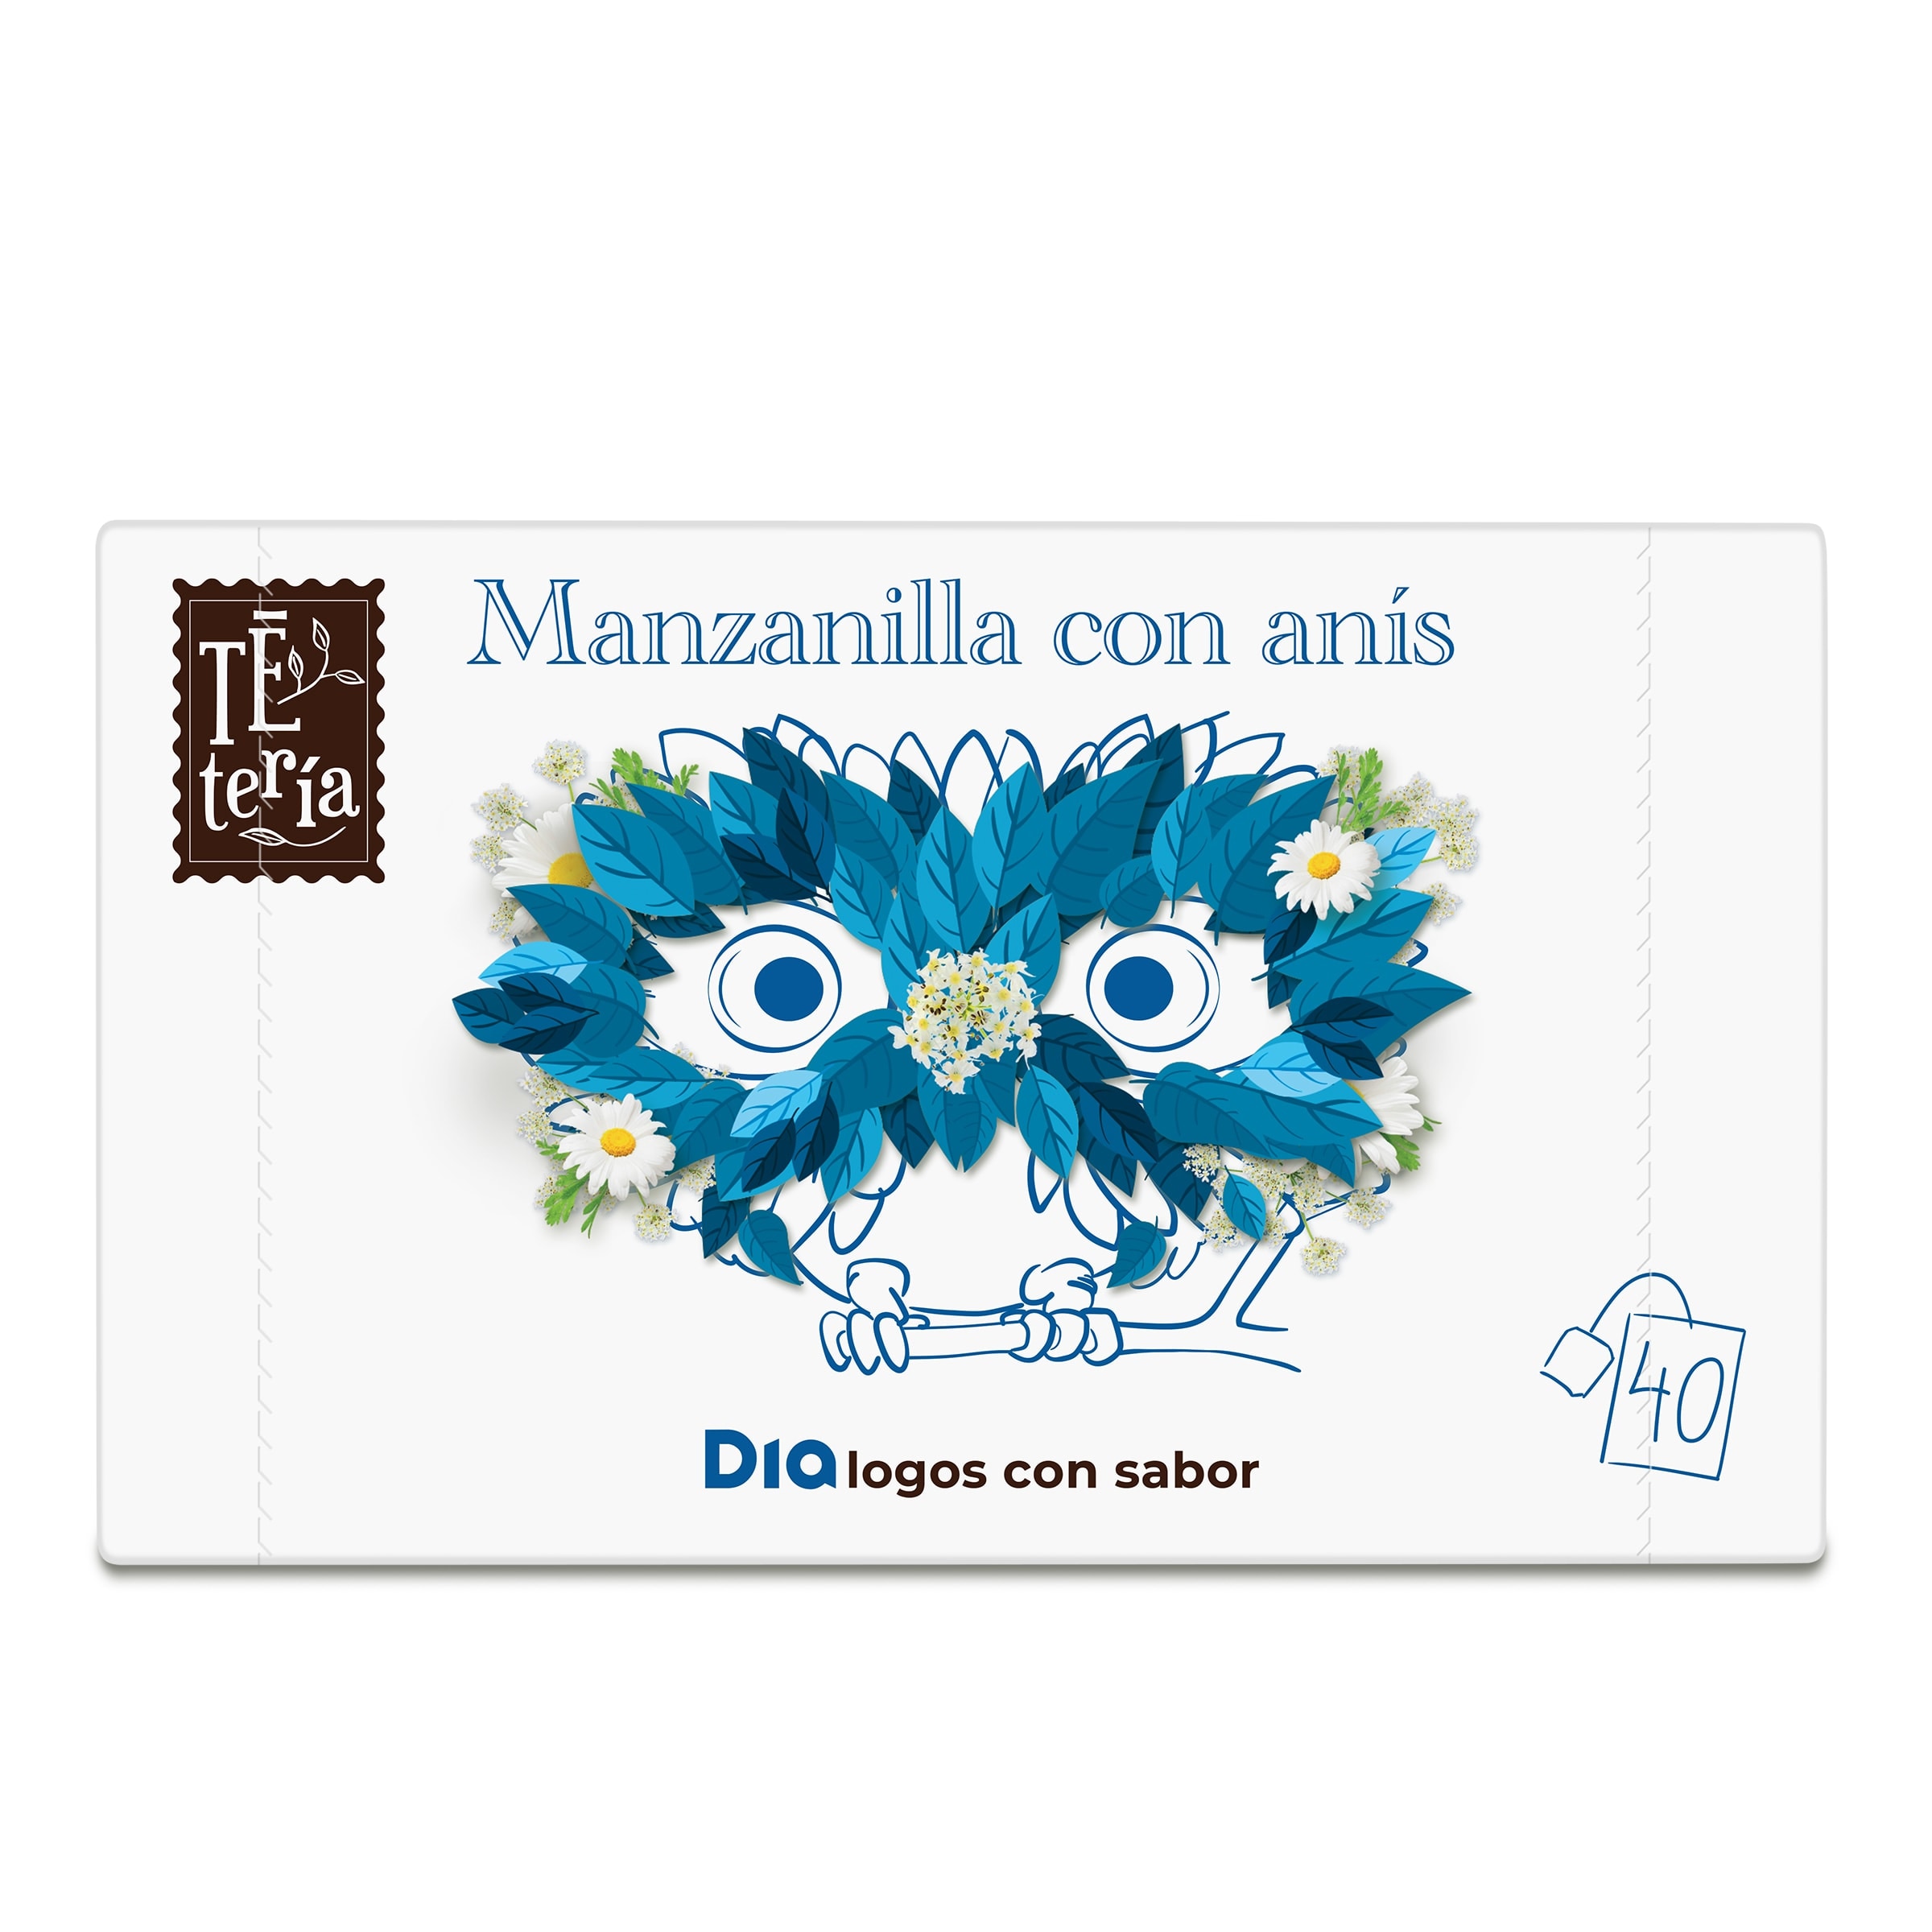 Manzanilla con anís Tetería caja 40 unidades - Supermercados DIA